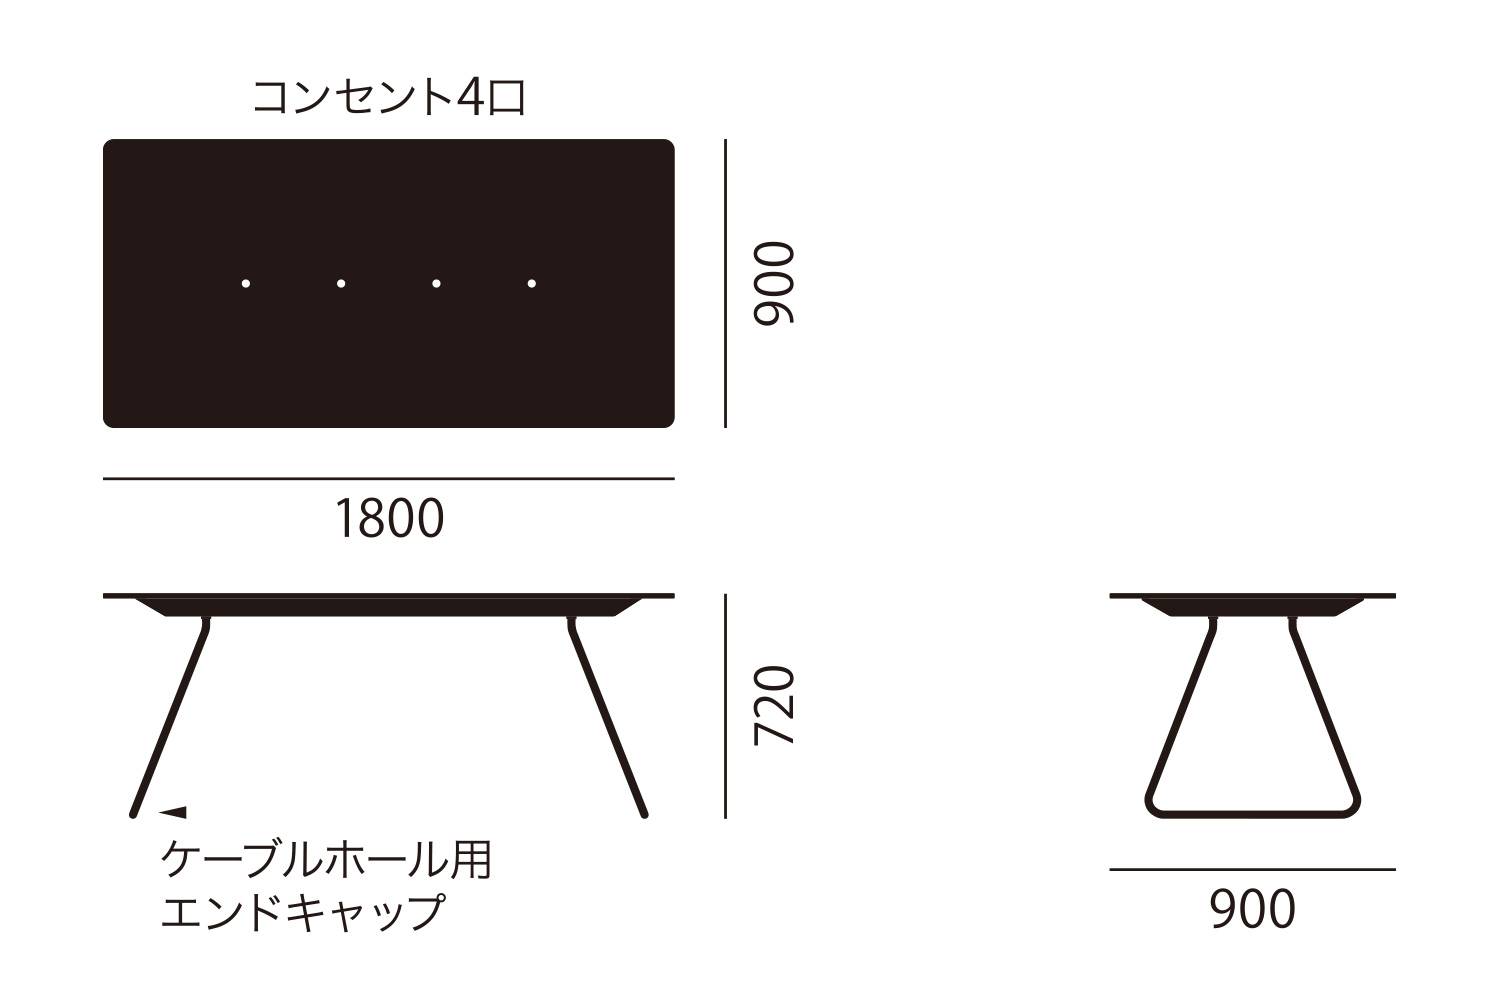 アイプラス 006: ミーティングテーブル 180cm サイズ詳細